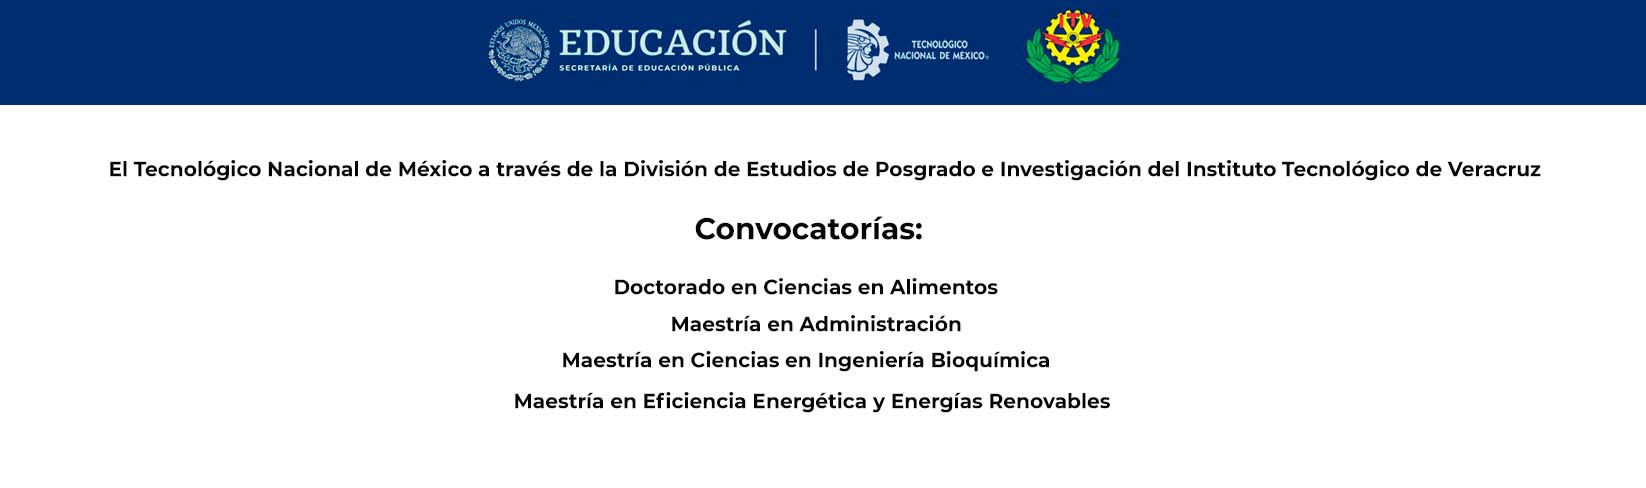 Convocatorías de Posgrados del TecNM Veracruz